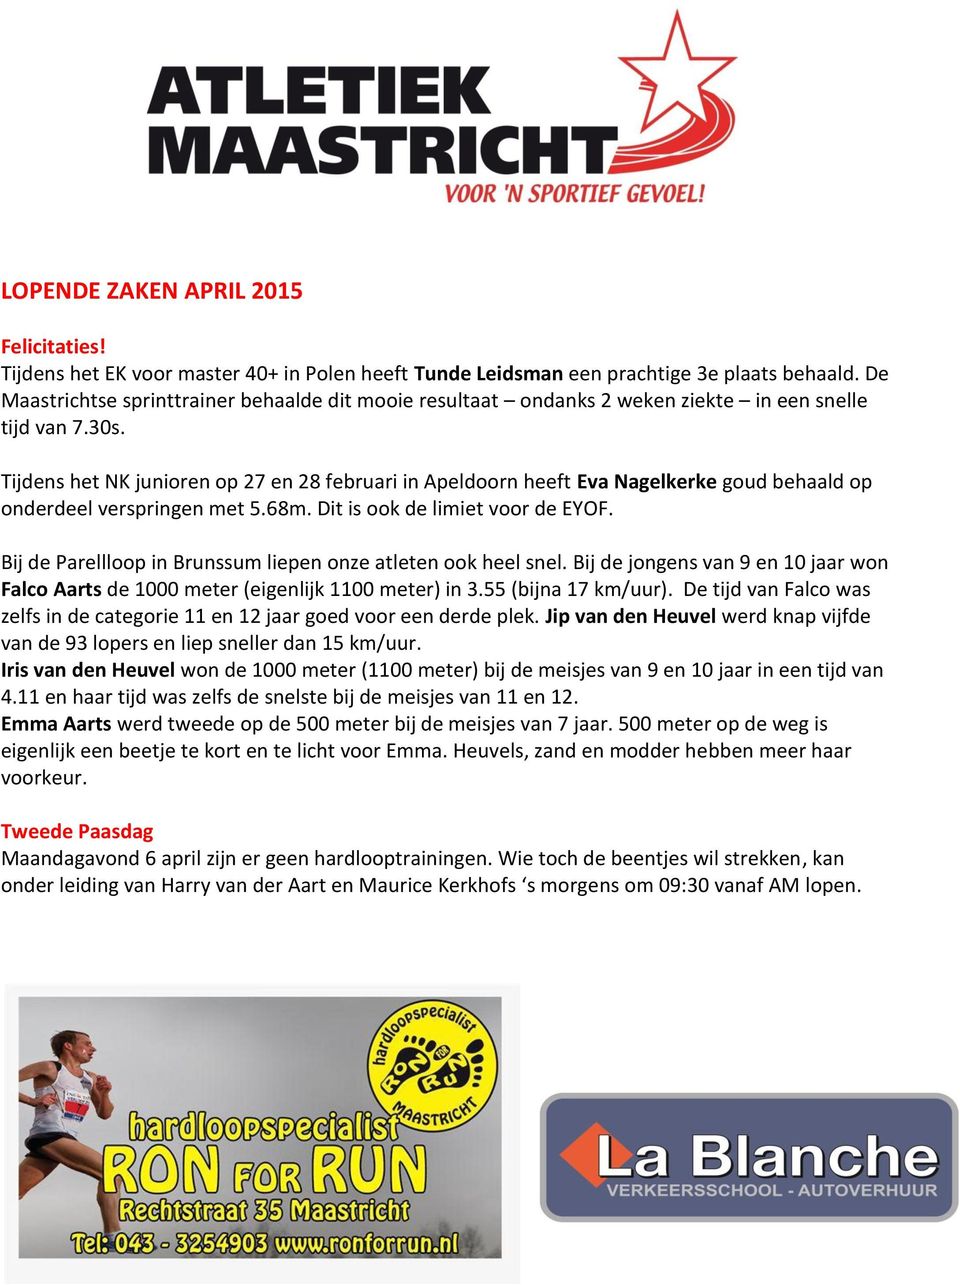 Tijdens het NK junioren op 27 en 28 februari in Apeldoorn heeft Eva Nagelkerke goud behaald op onderdeel verspringen met 5.68m. Dit is ook de limiet voor de EYOF.